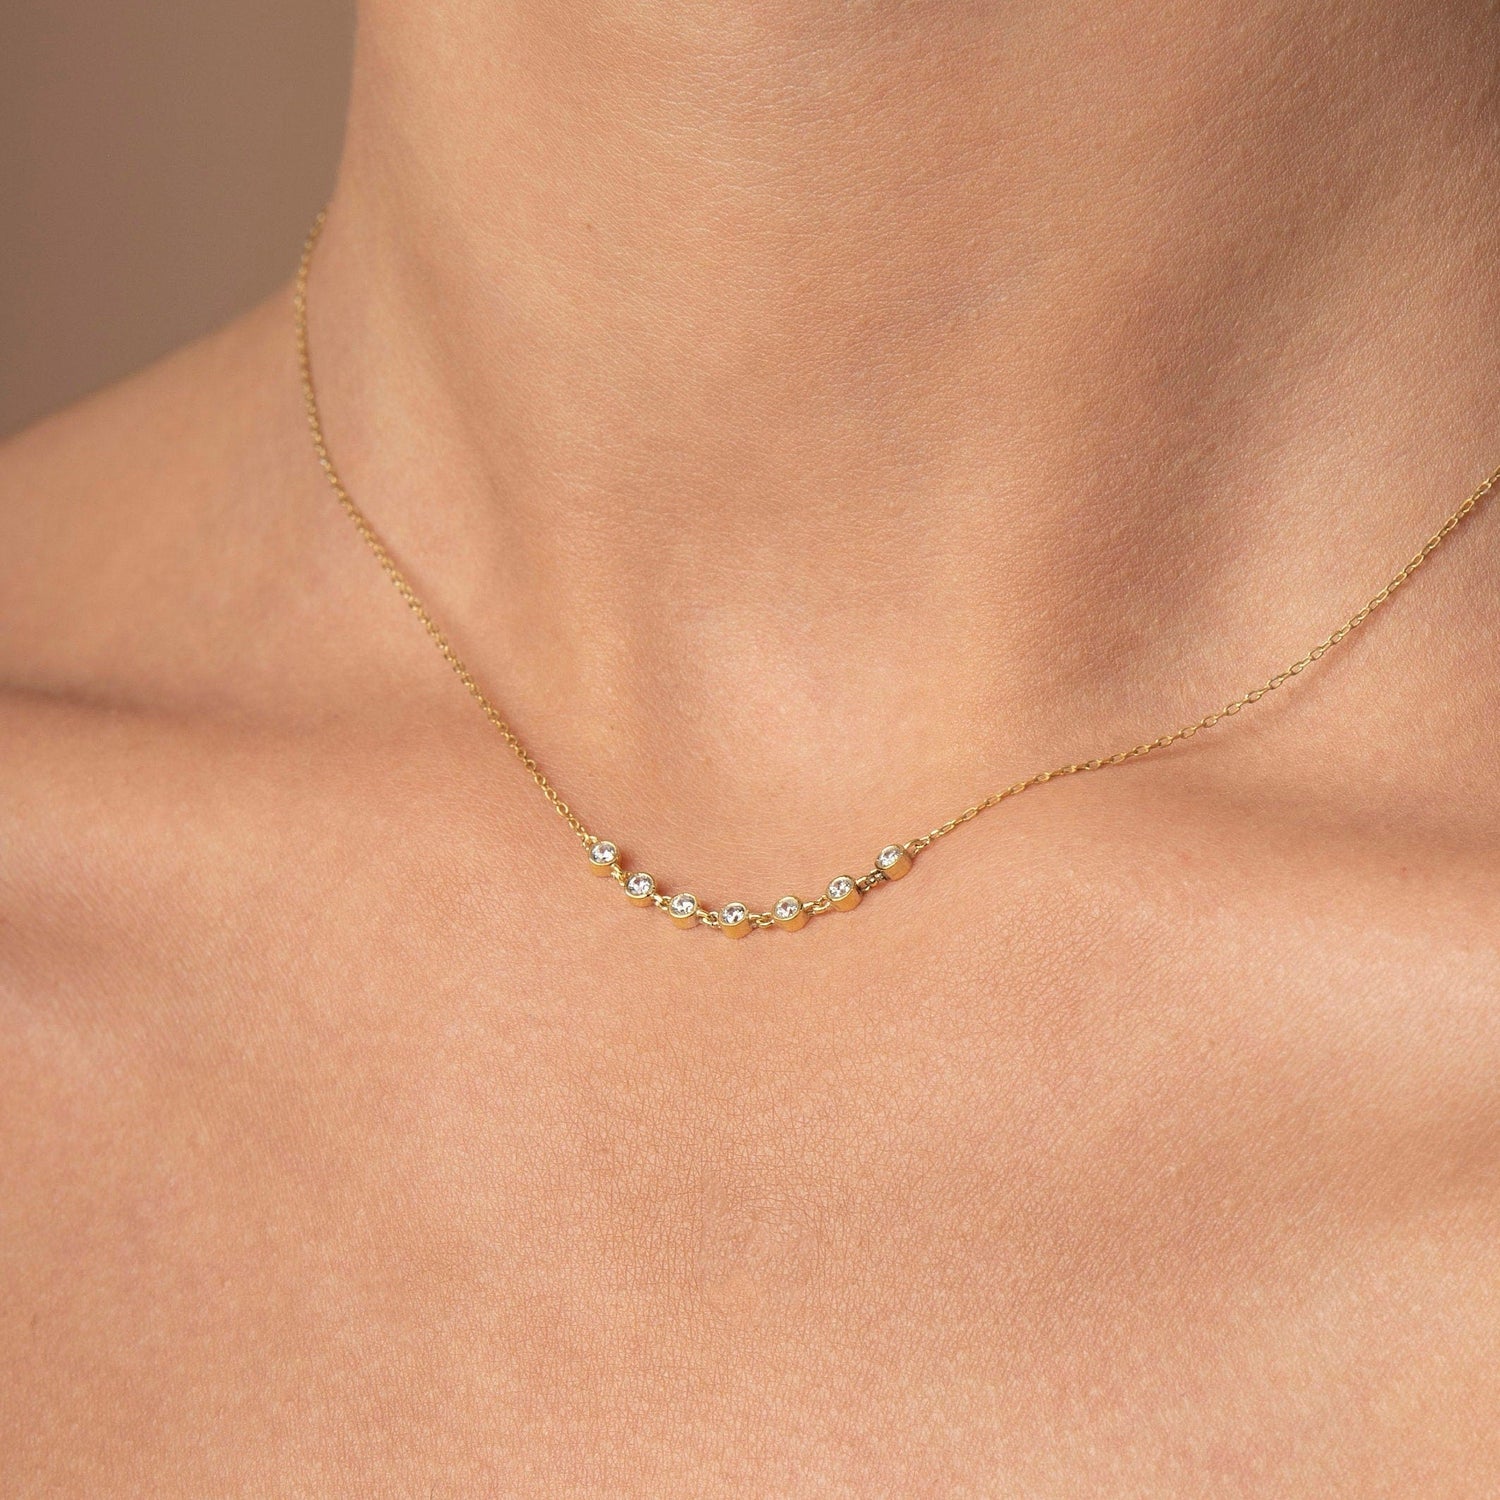 Diamond Bezel Necklace / Dainty Bezel Diamond Necklace / X3 X5 X7 Diamond Linked Necklace / Delicate Diamond Necklace / Christmas Sale